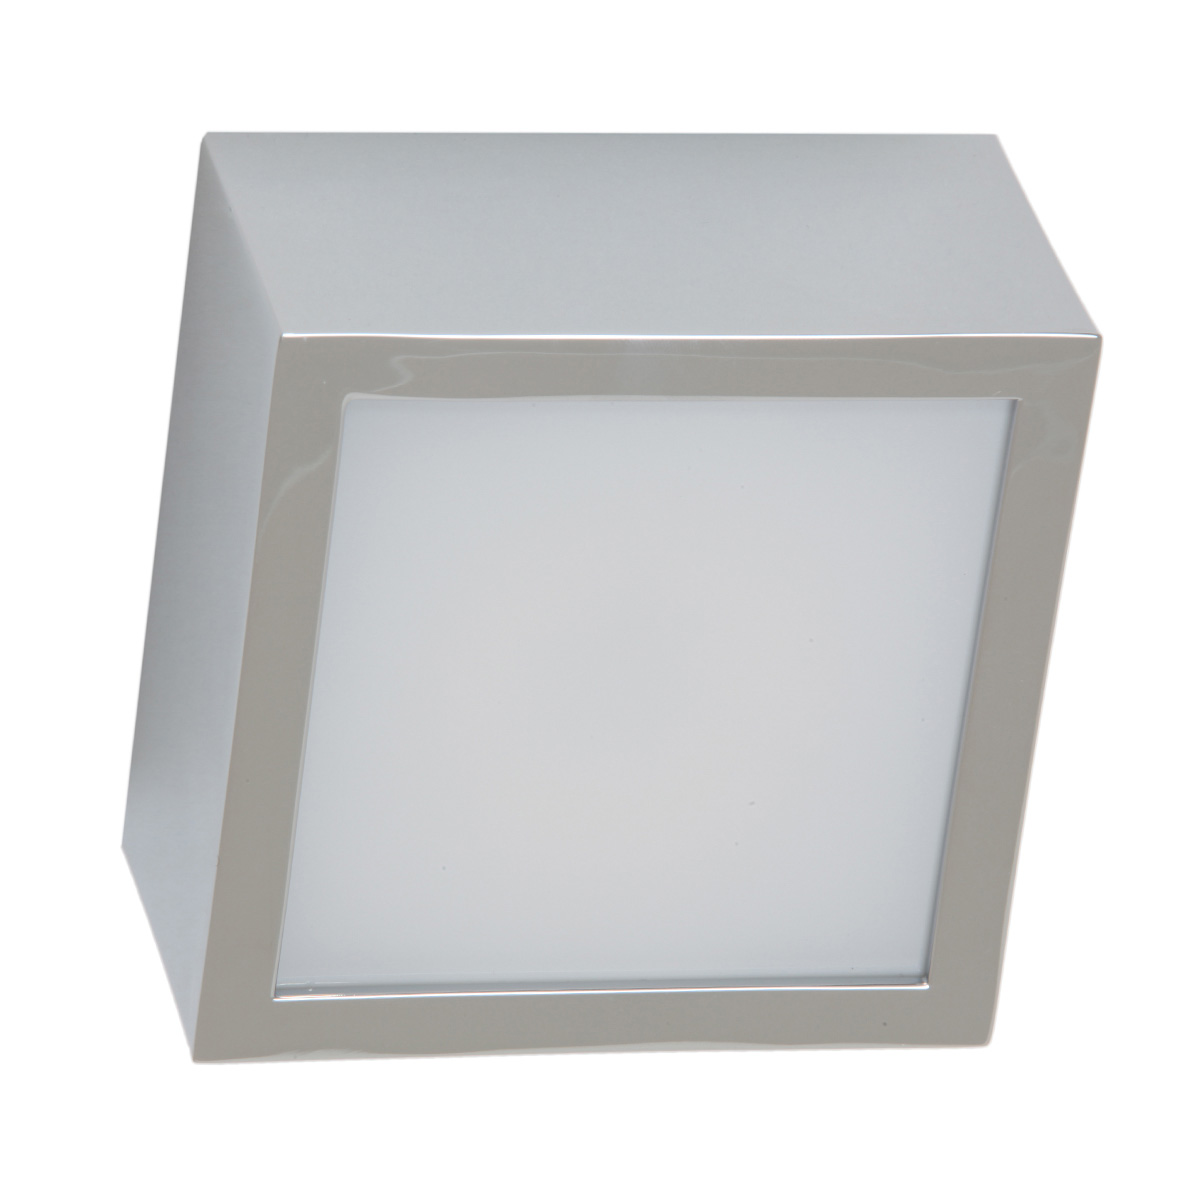 KARREE LED Exklusive Badezimmer-Deckenlampe IP44 10/18 cm: Badleuchte, Ausführung in Chrom, Modell 1